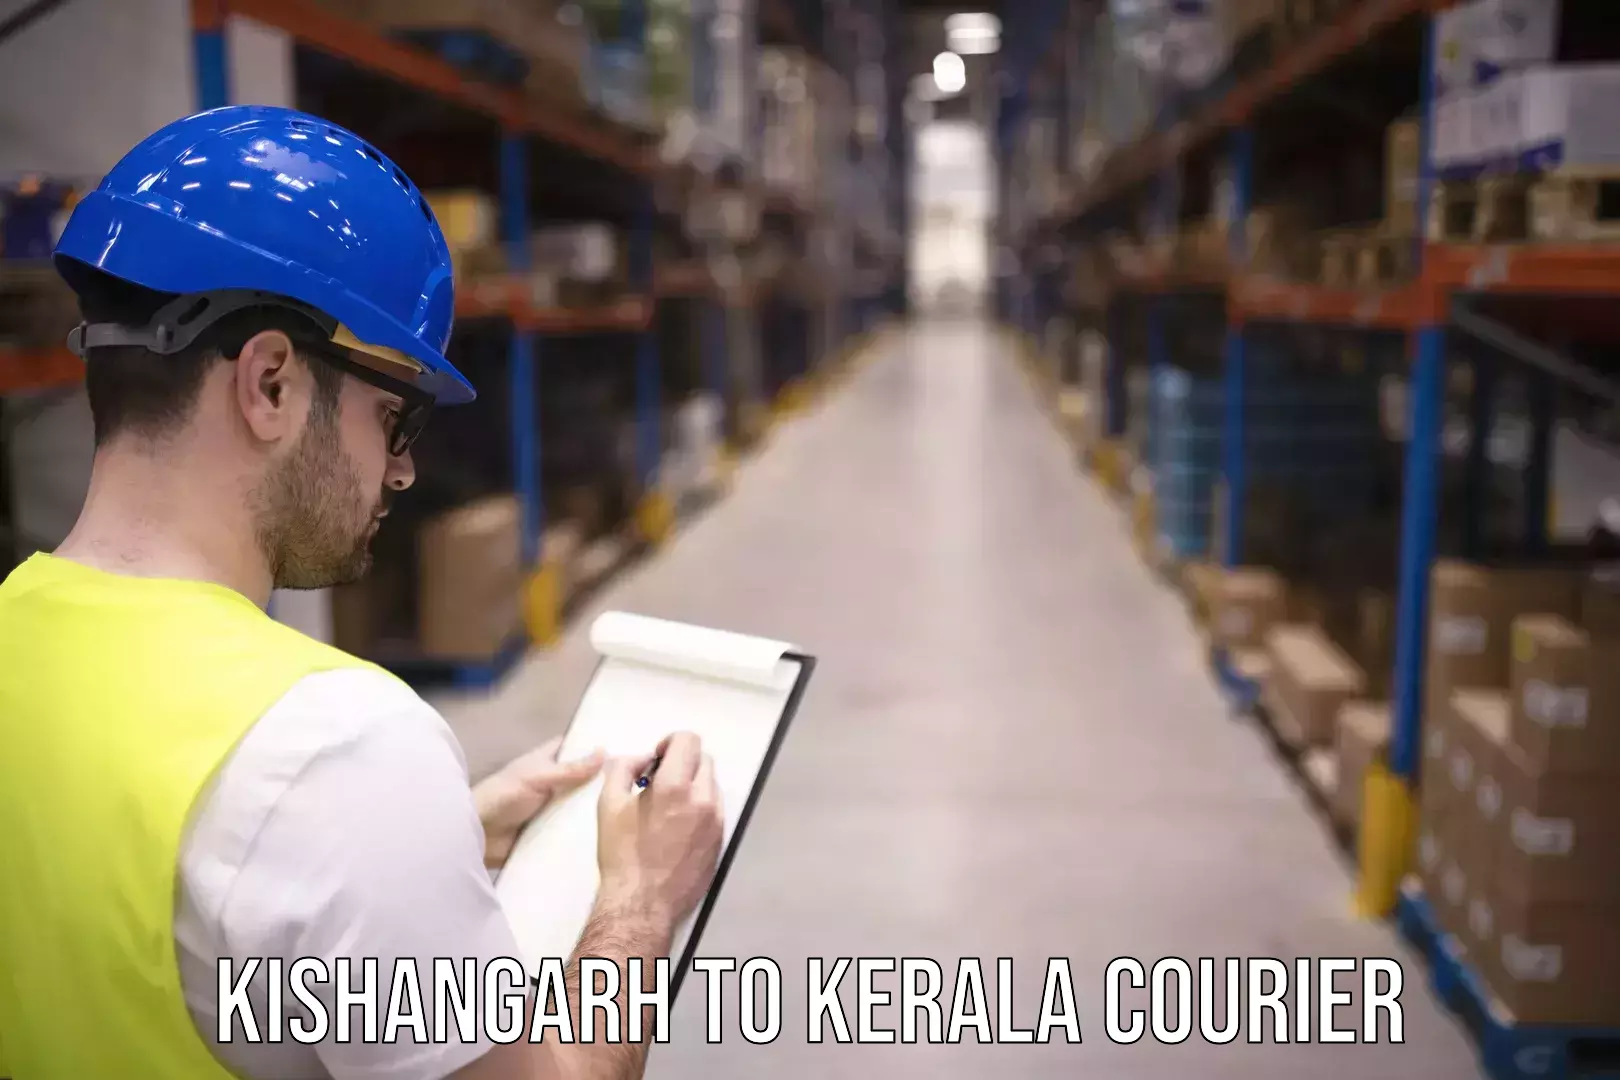 Customizable delivery plans Kishangarh to Guruvayur